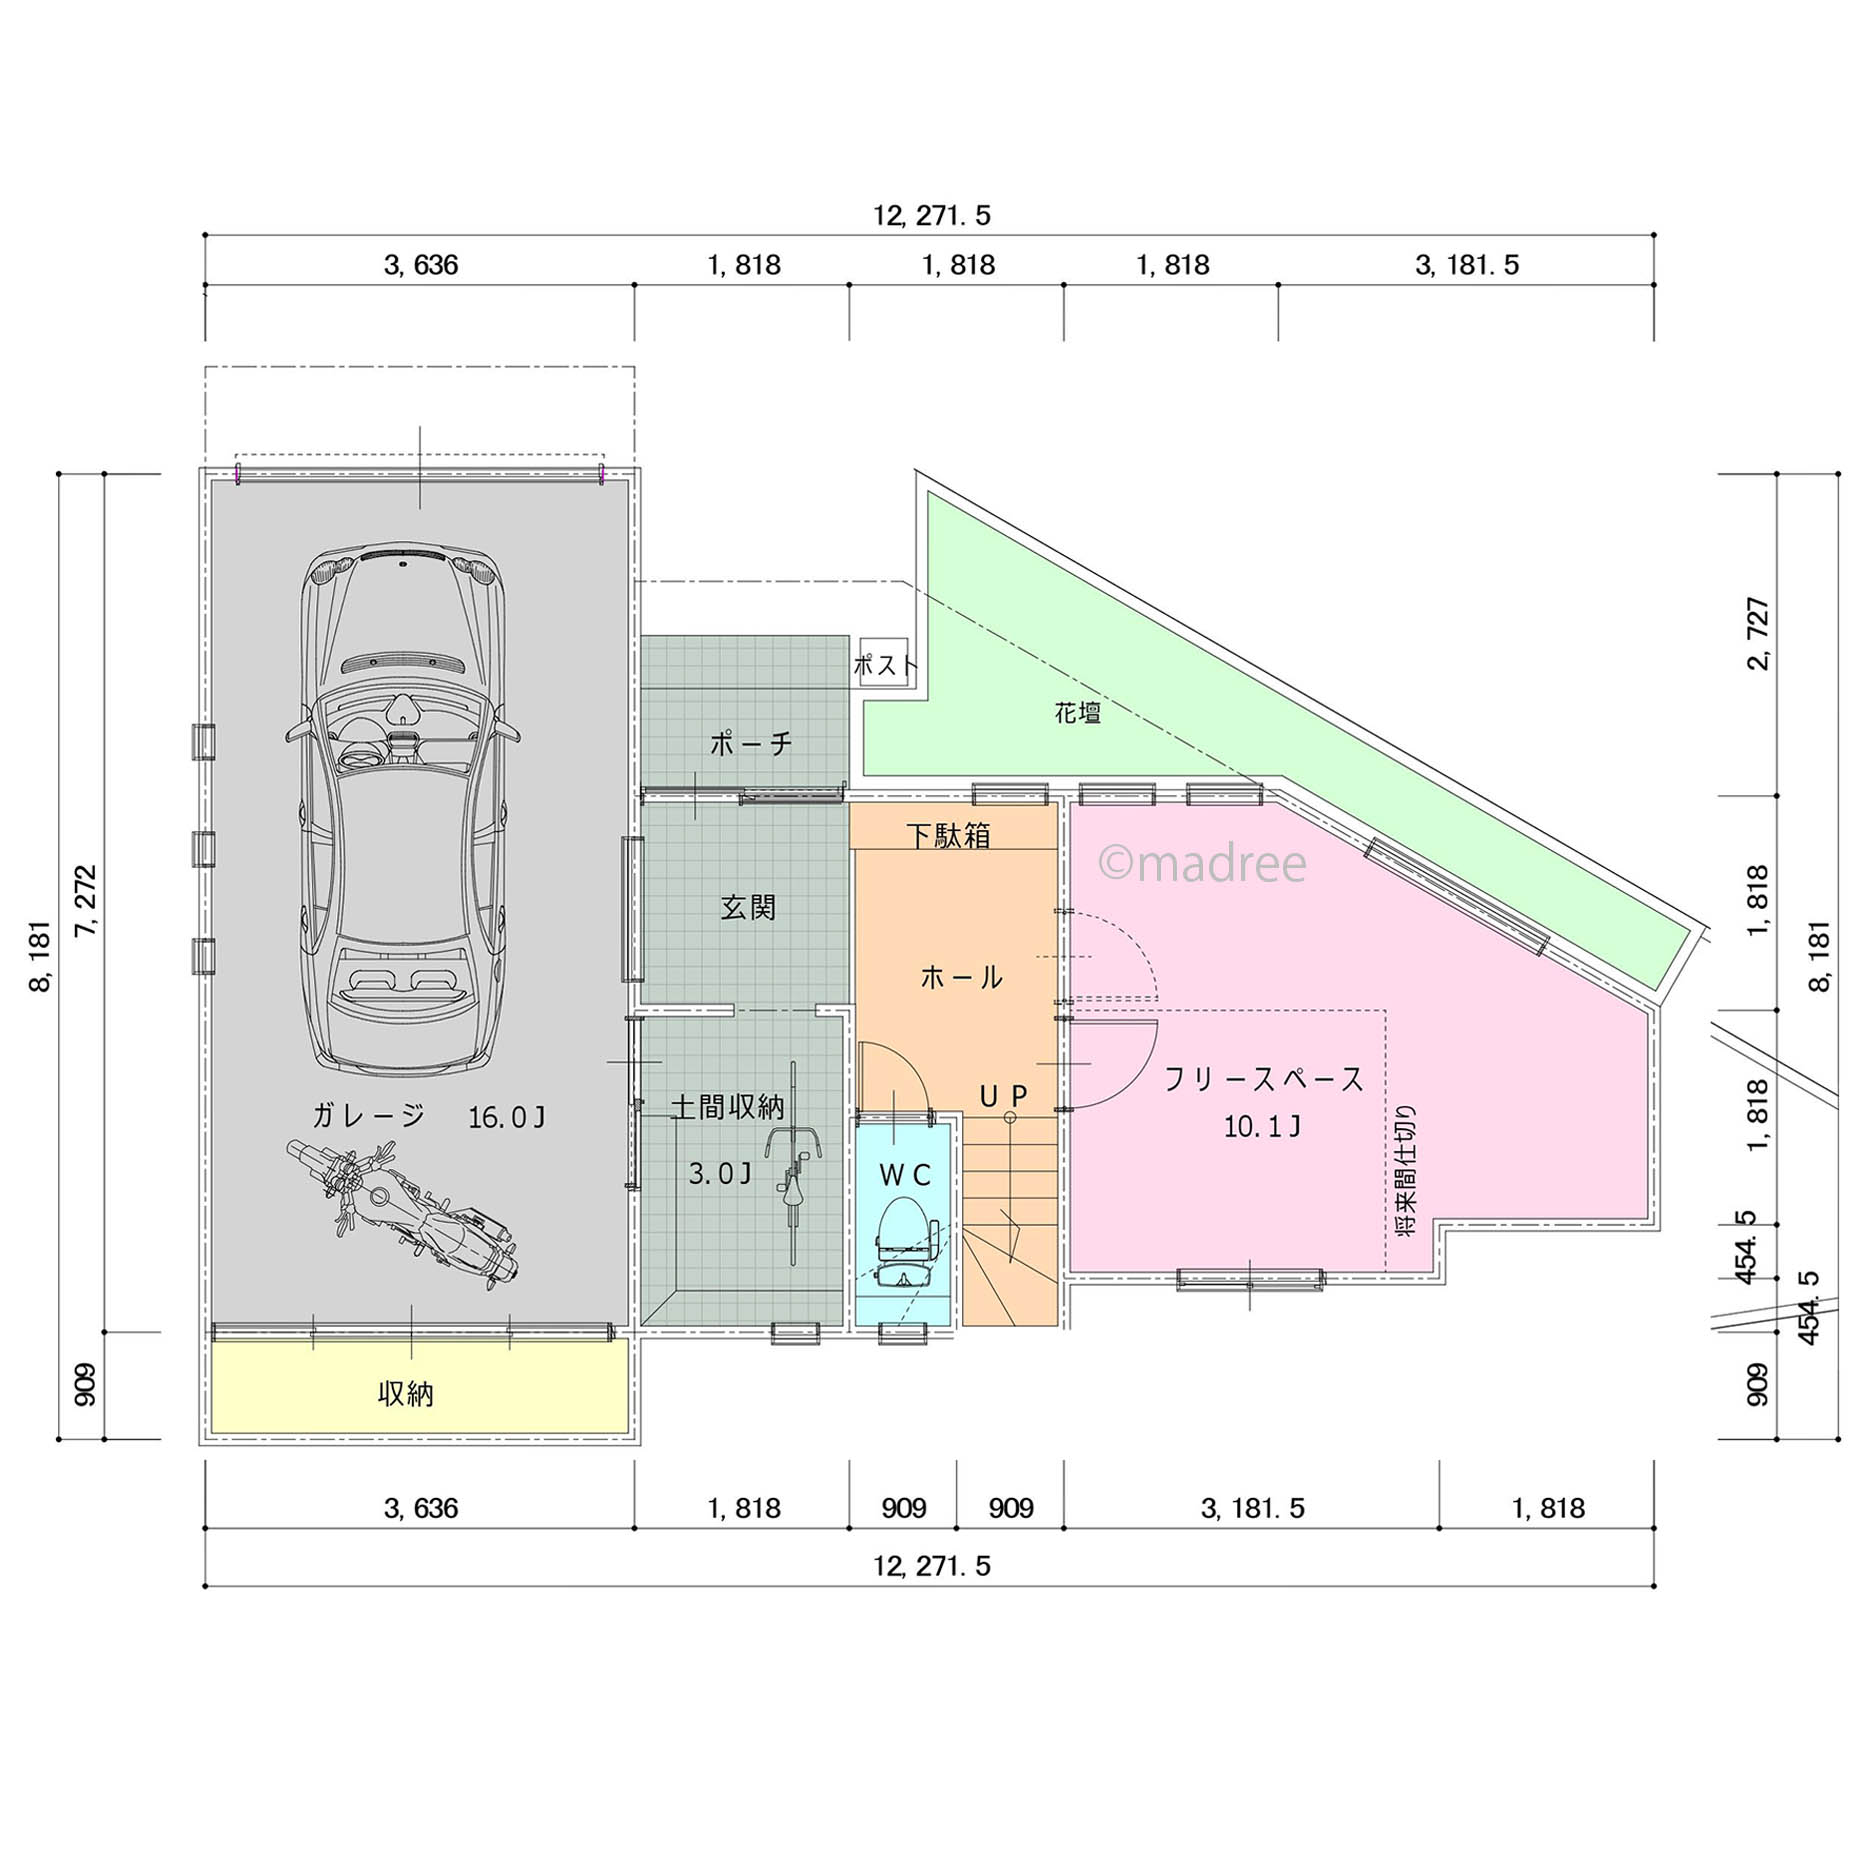 [39坪 2LDK] ウォークスルーで効率よく身支度、ガラス越しの愛車が映えるビルトインガレージの家の間取り図　1階の画像